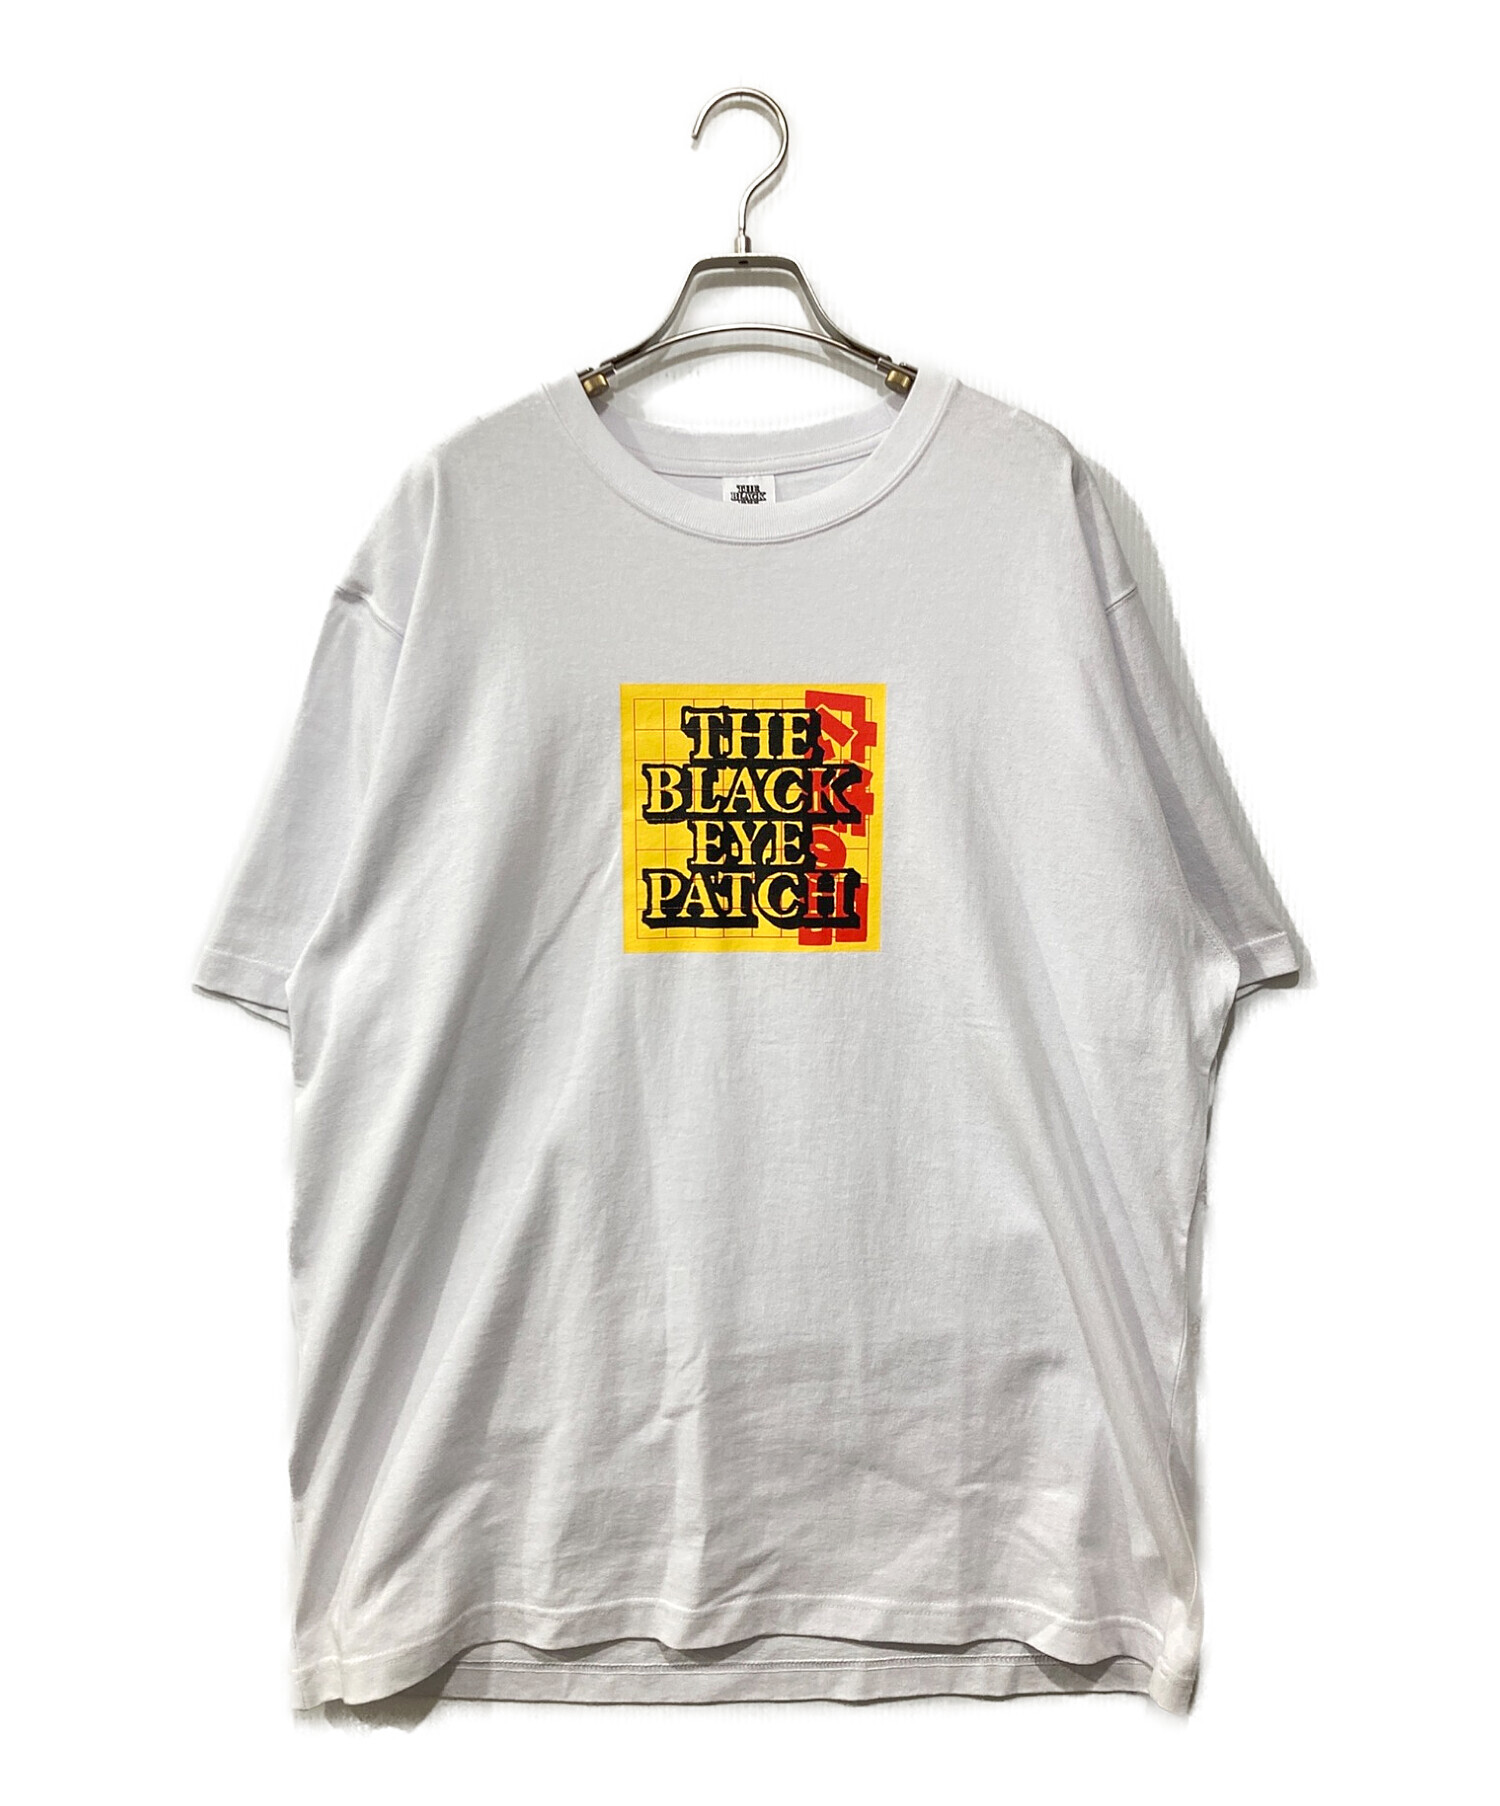 THE BLACK EYE PATCH (ブラックアイパッチ) Tシャツ ホワイト サイズ:XL